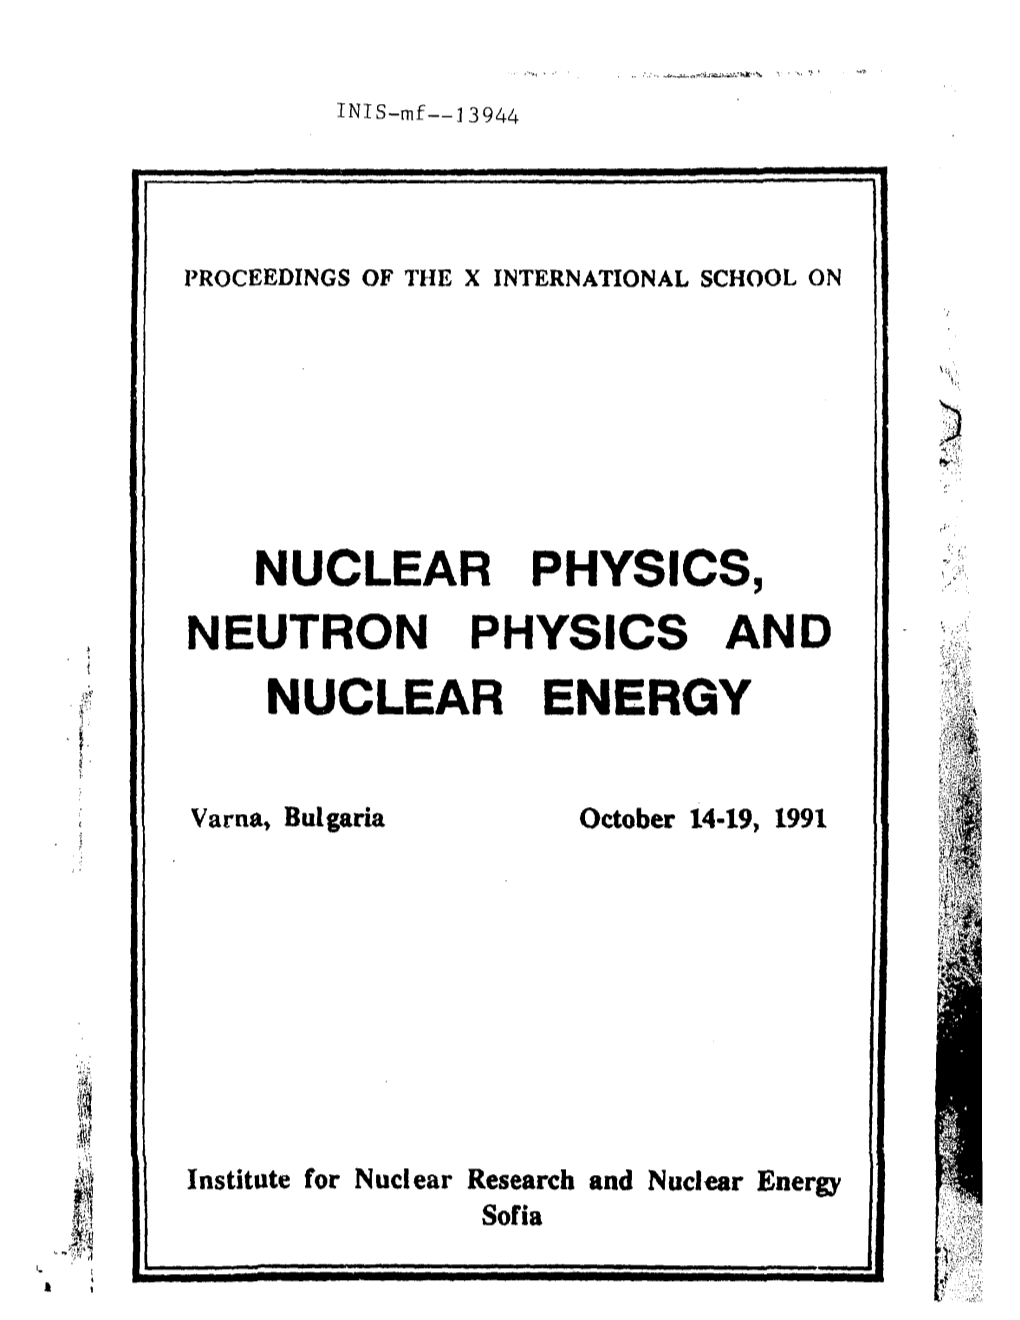 Nuclear Physics, Neutron Physics and Nuclear Energy